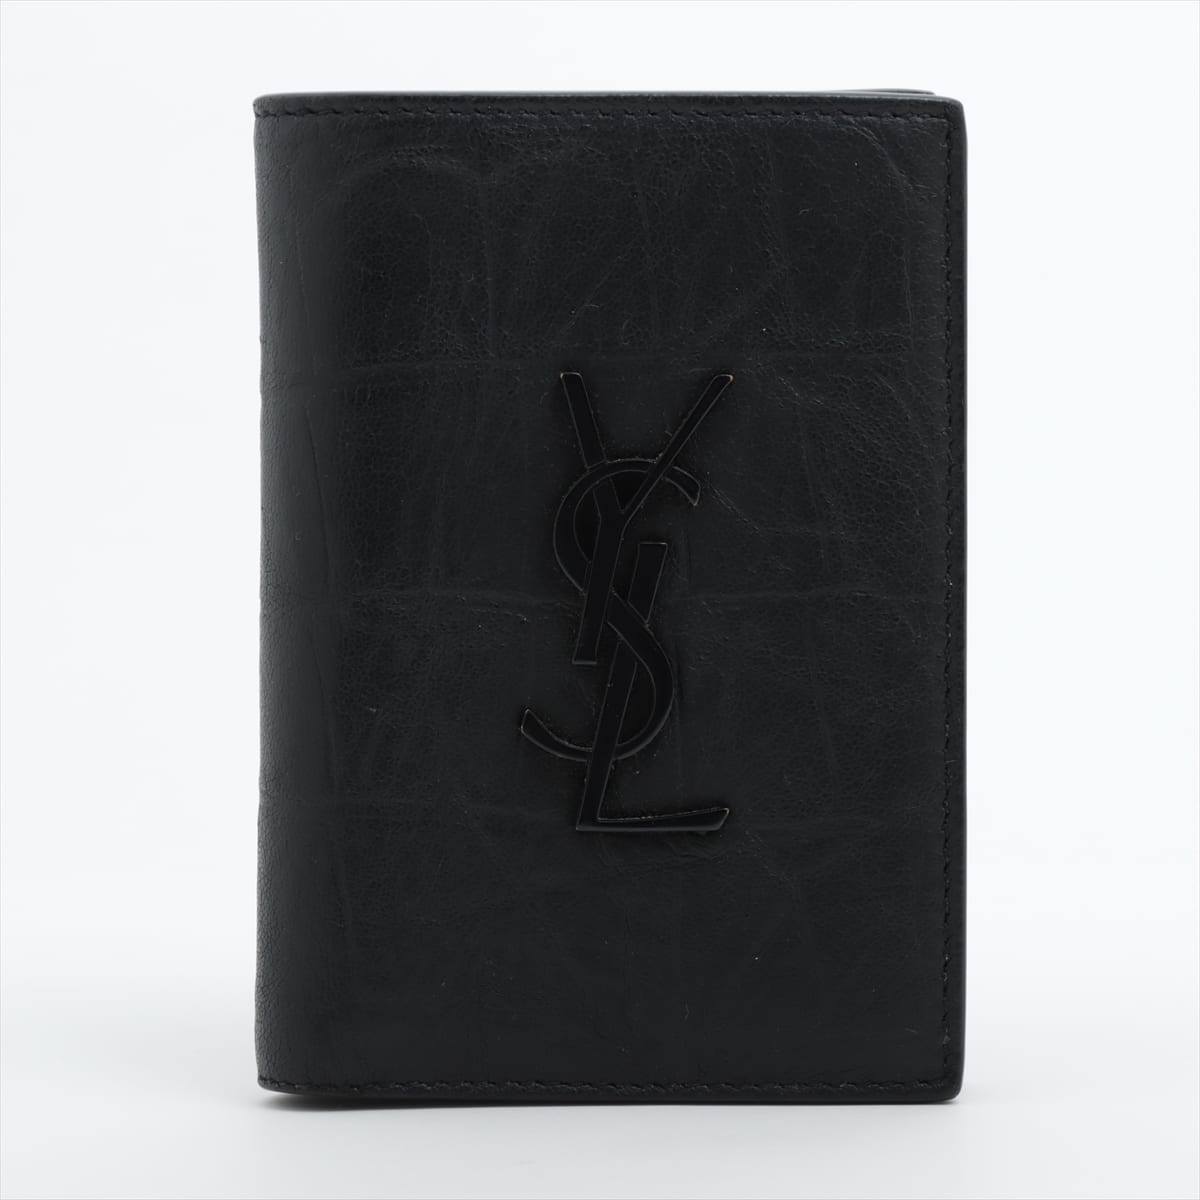 Saint Laurent Leather Wallet Black